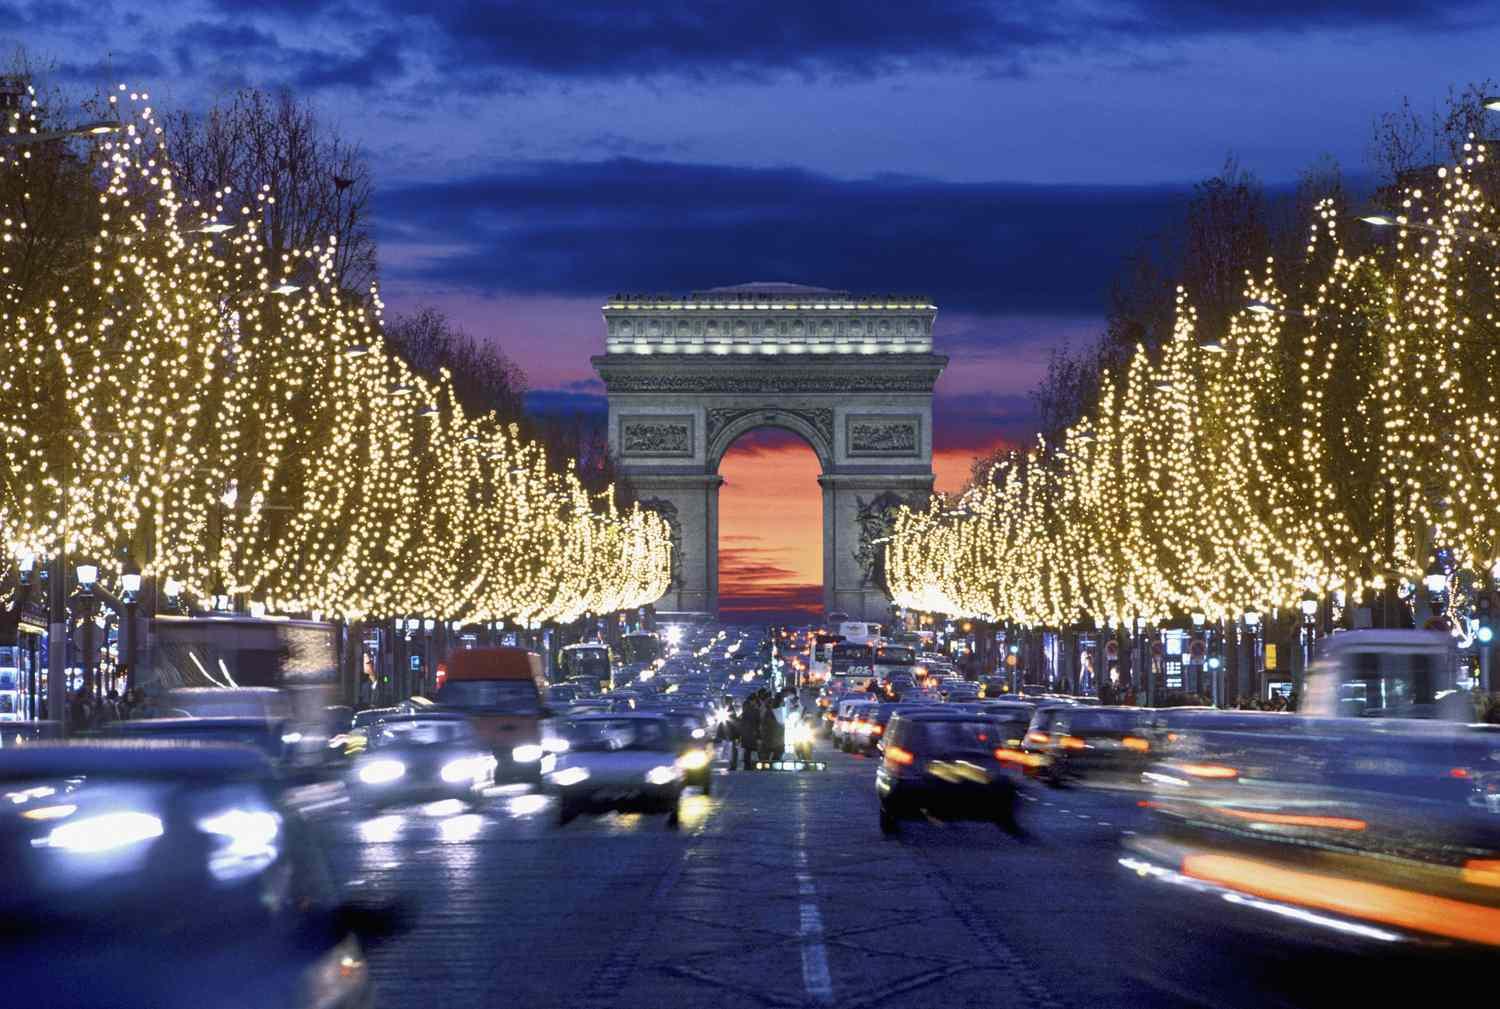 Champs-Élysées decorated for Christmas Eve | Wedifys